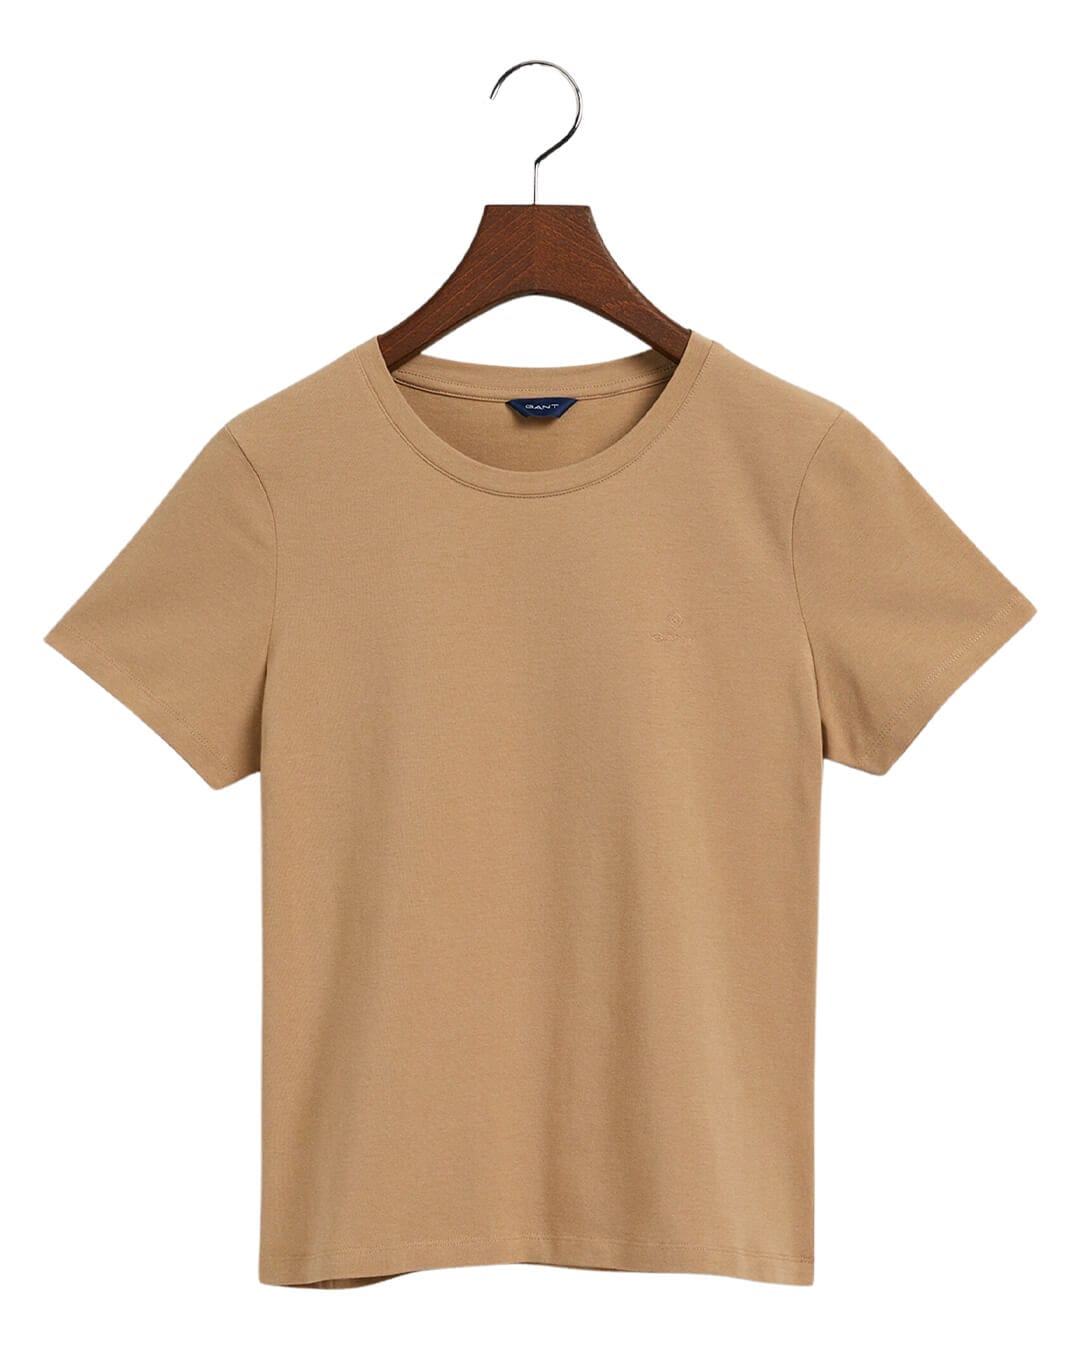 Gant T-Shirts Gant Beige Stretch Cotton Top